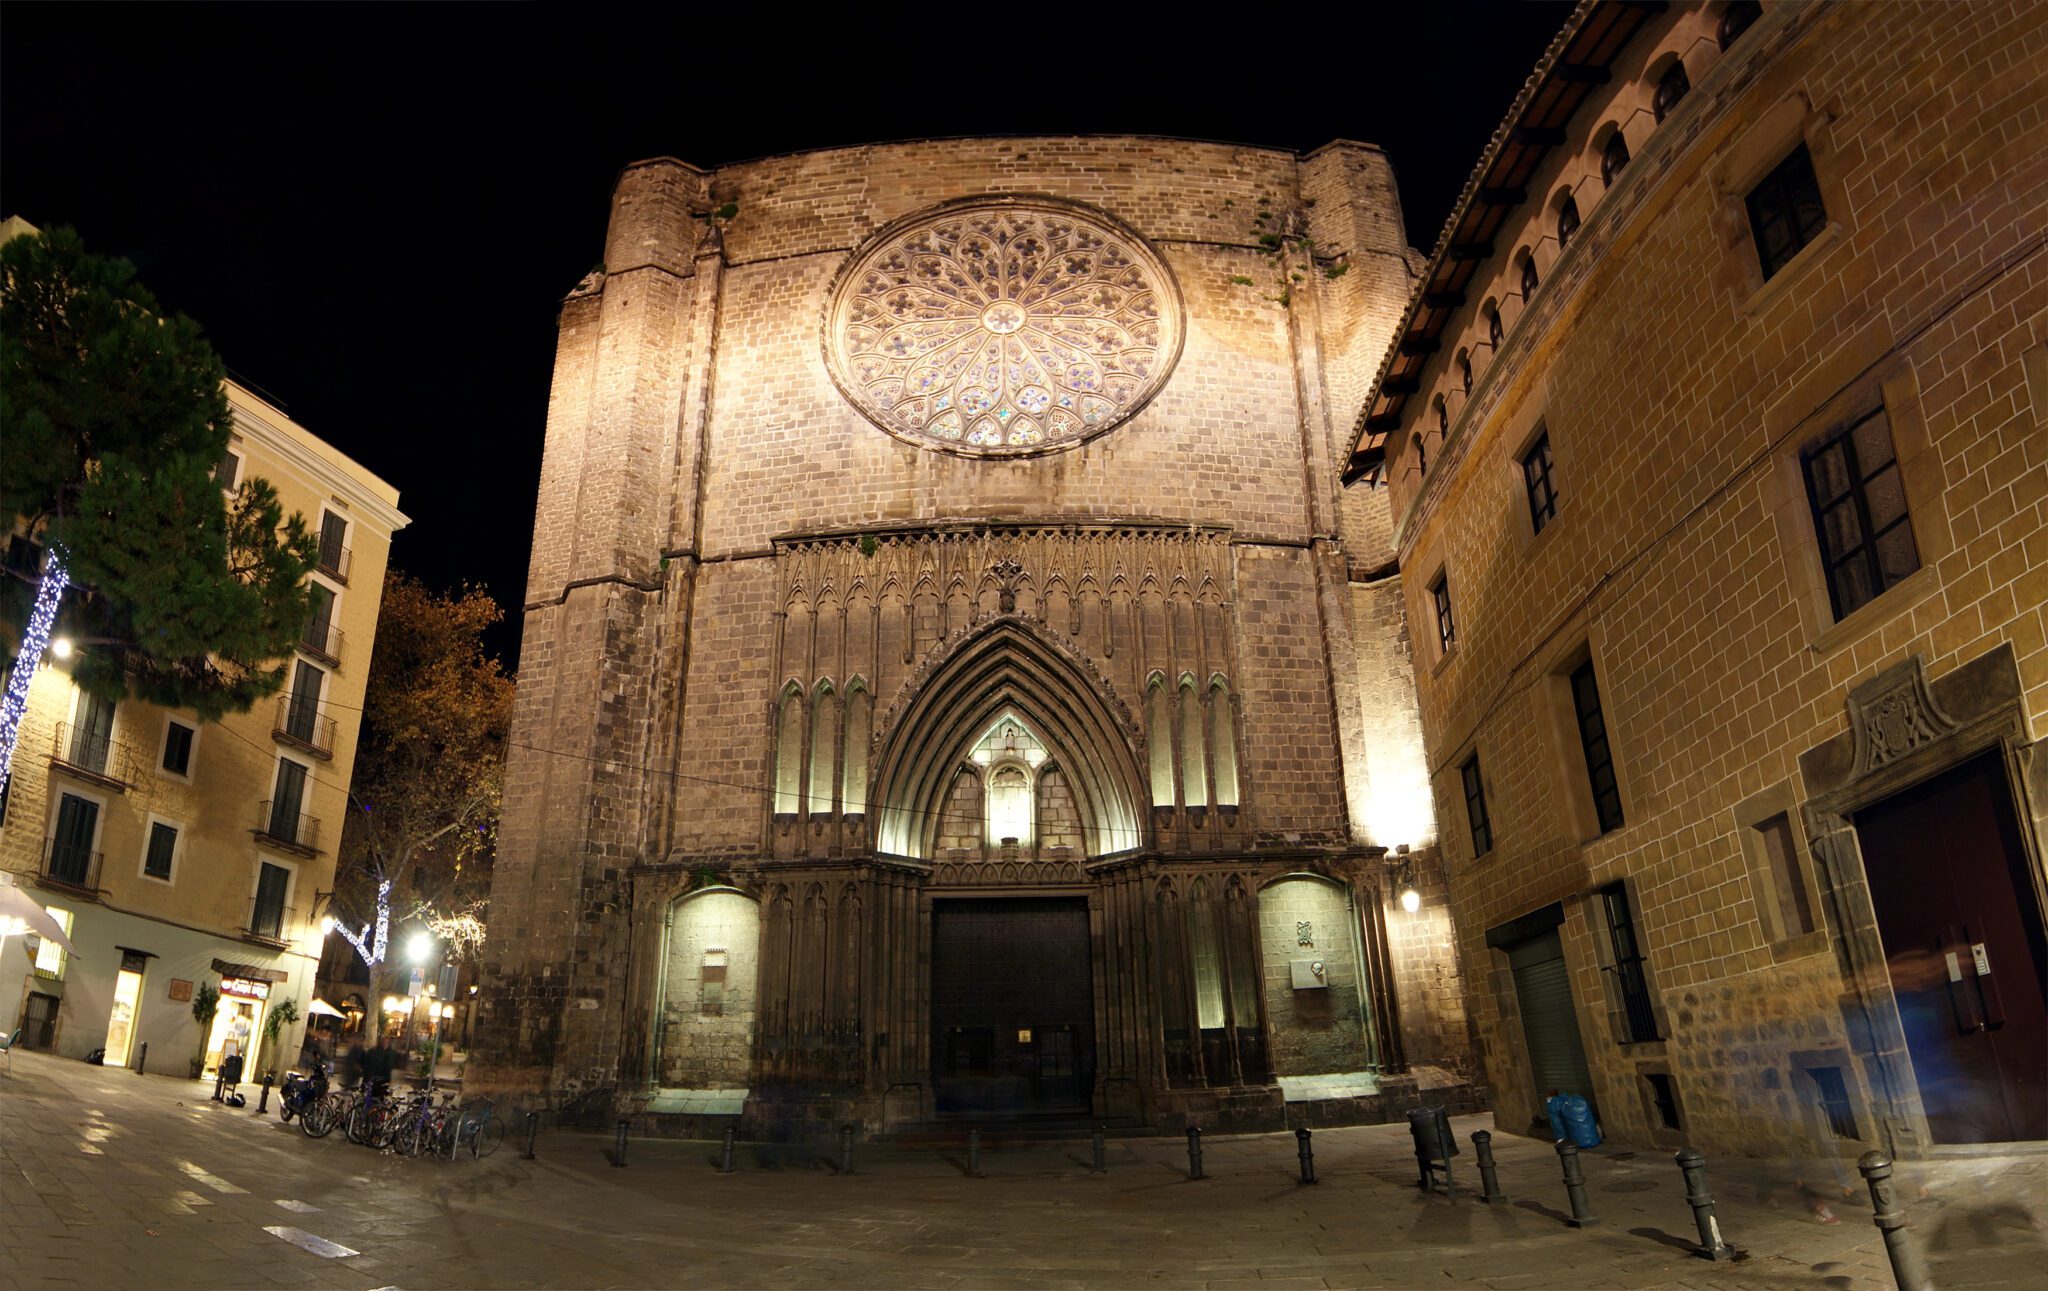 Barcelona kościół oświetlony nocą